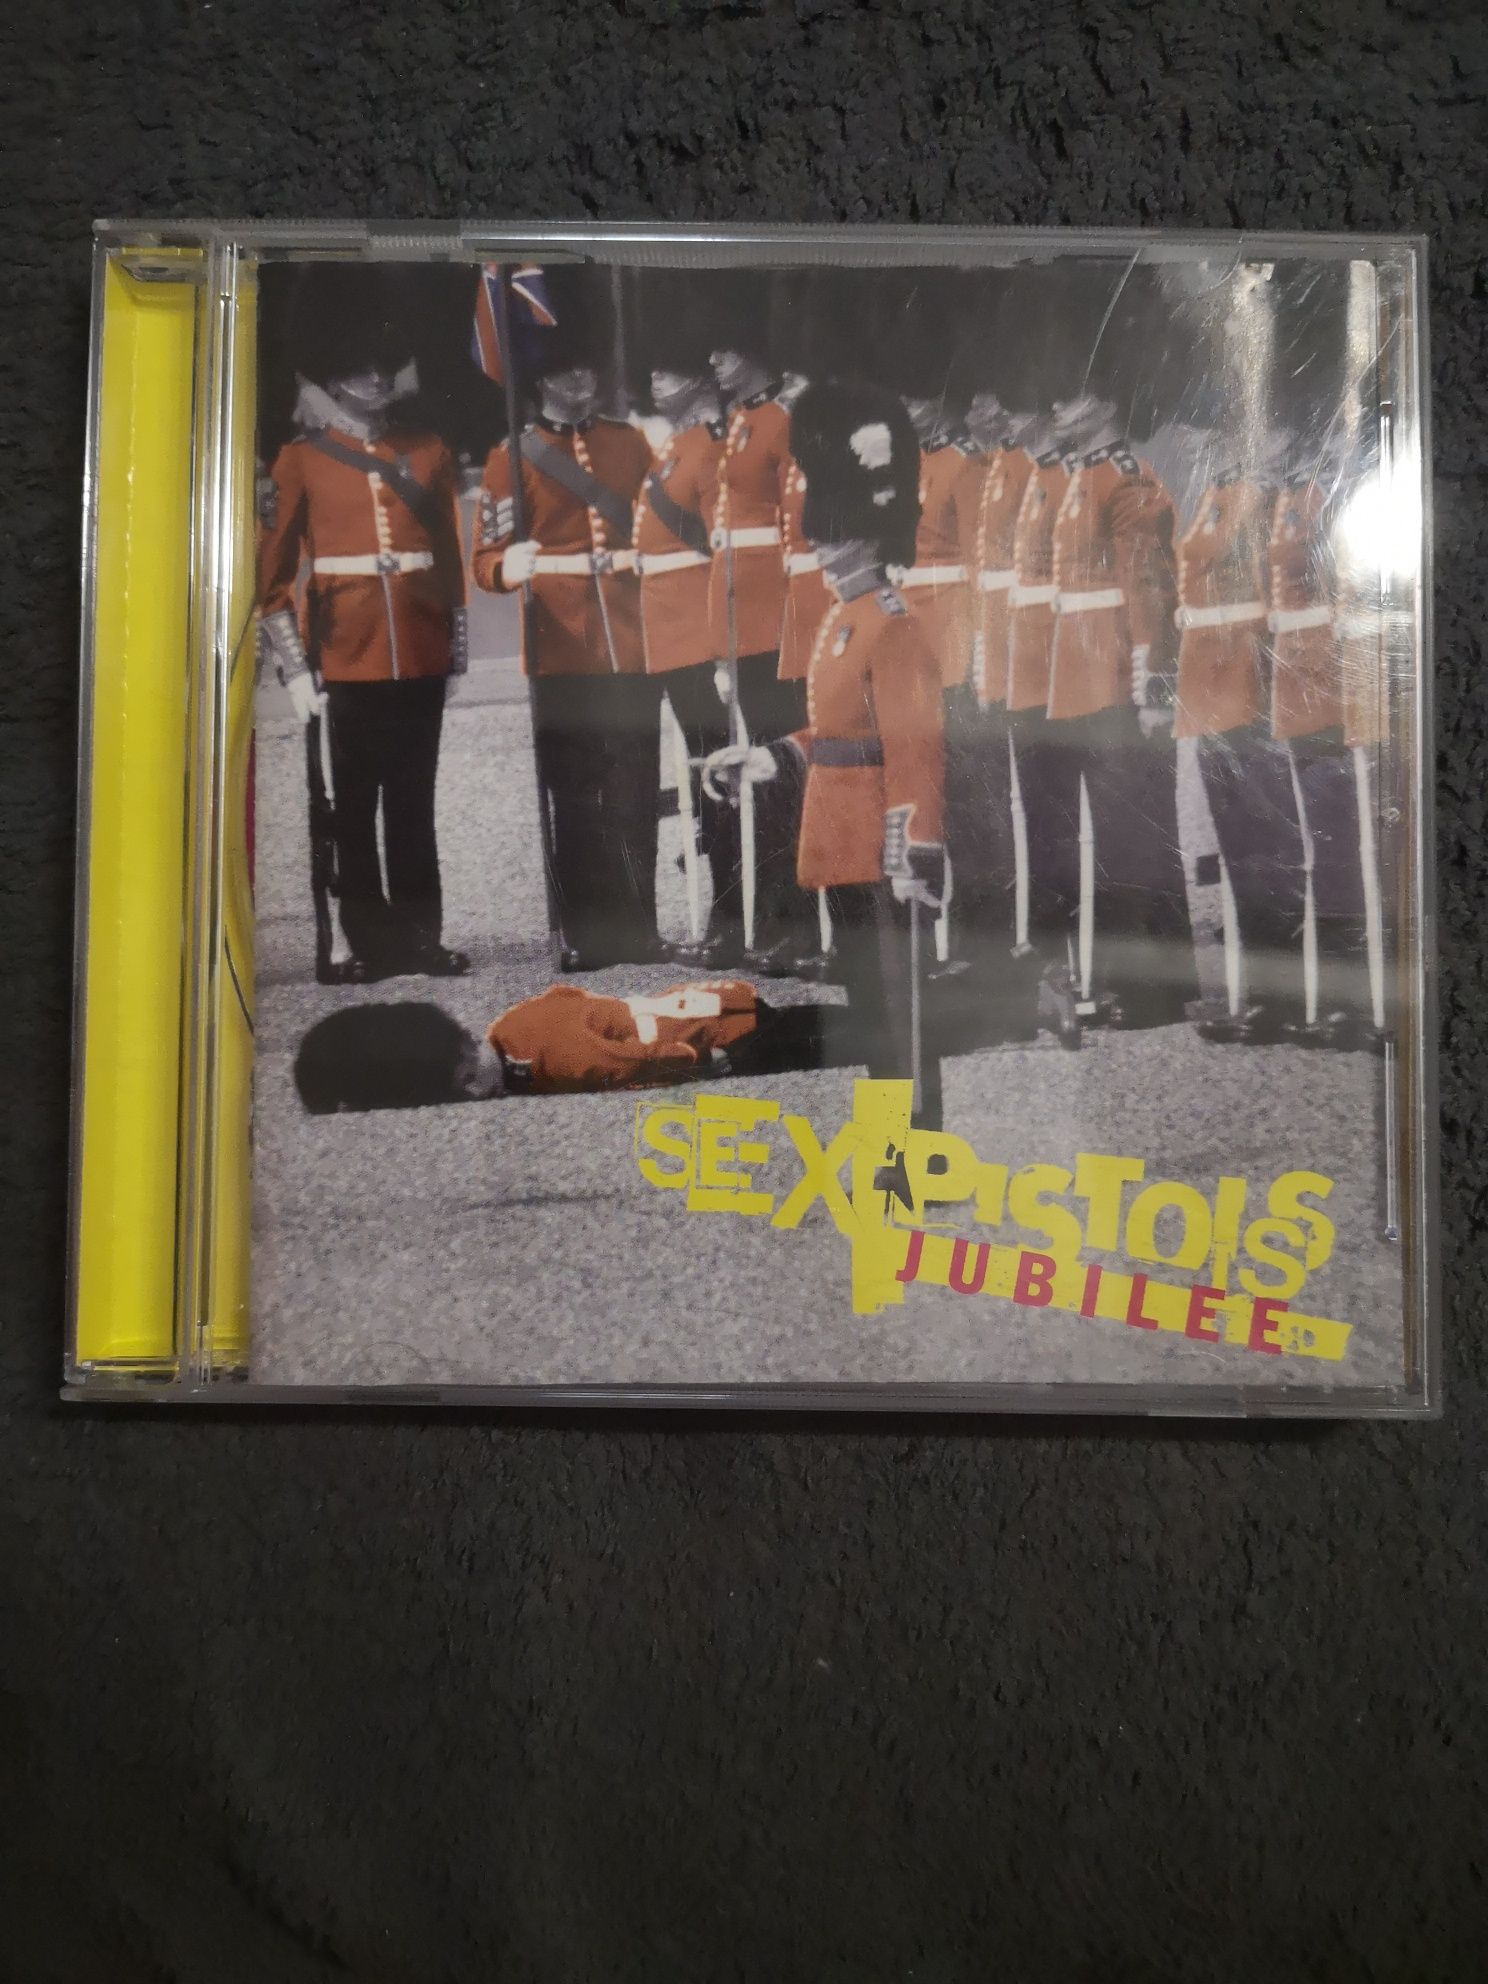 Sex pistols Jubilee płyta cd